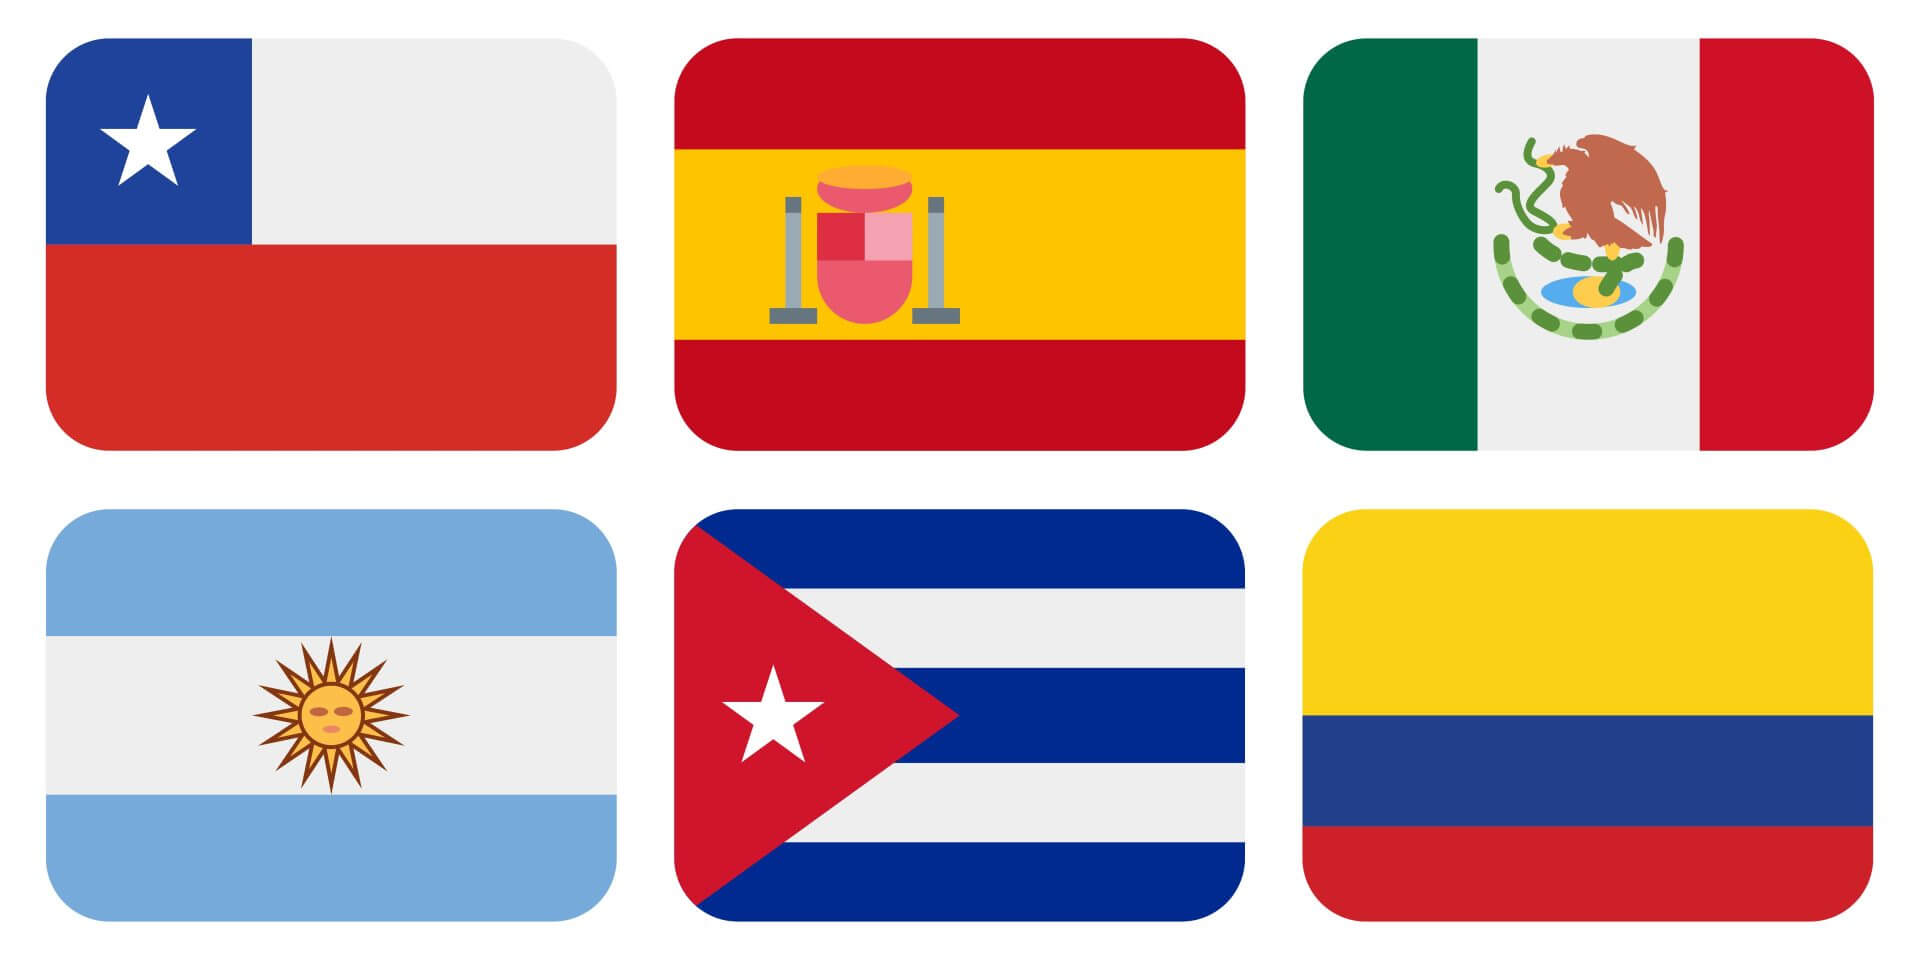 Instituto Hispánico de Murcia - Poznaj różne akcenty hiszpańskiego na świecie